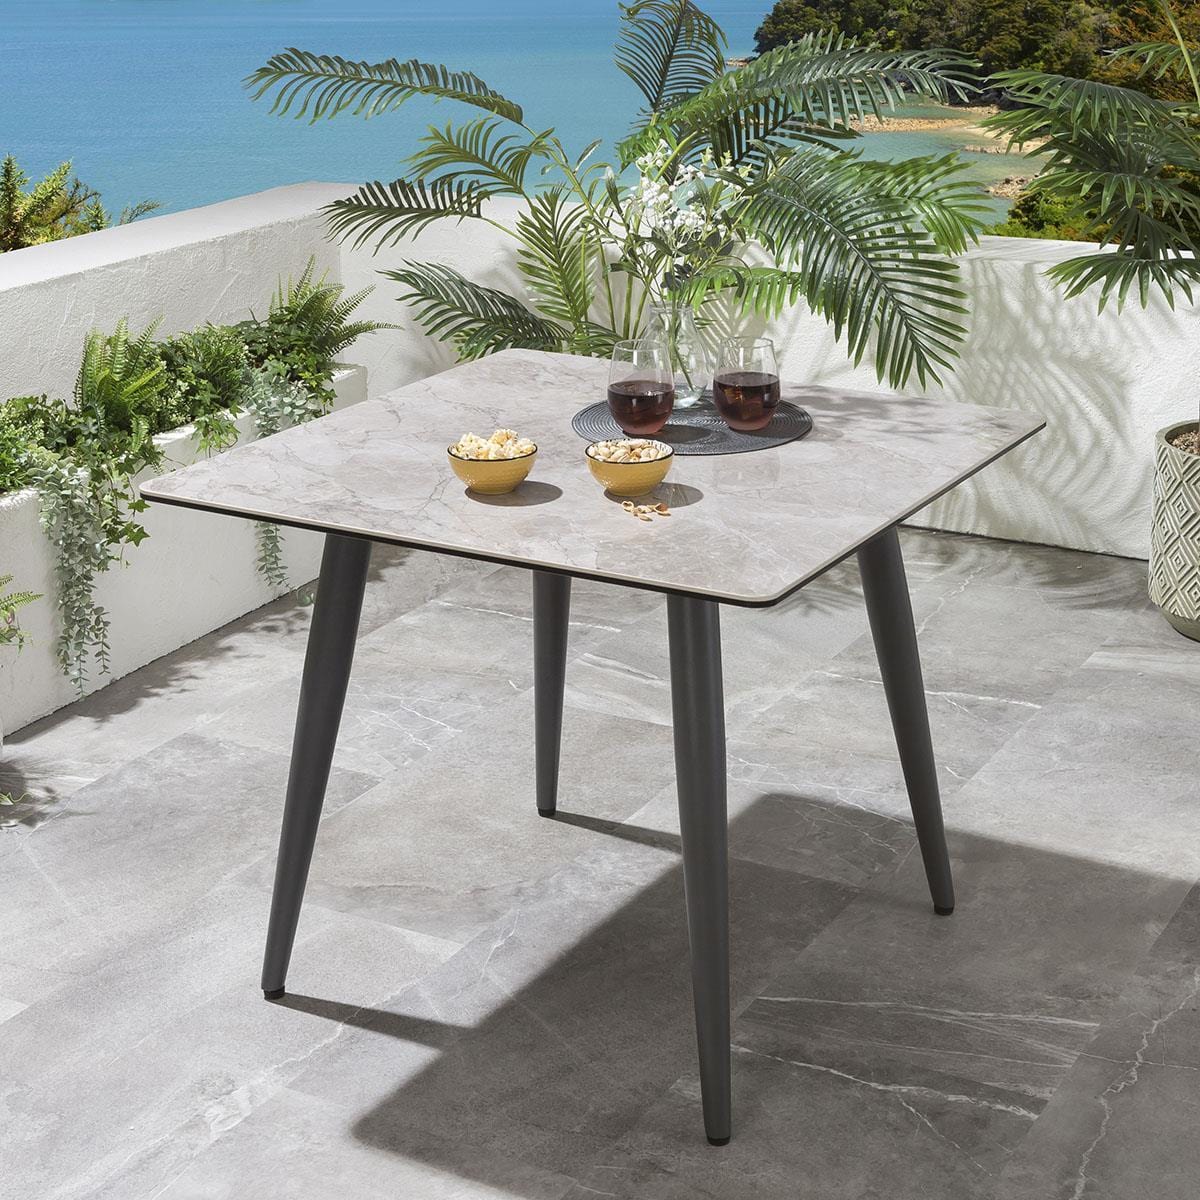 Quatropi Mia 4 Seater Square Ceramic Outdoor Garden Dining Set Aluminium Grey